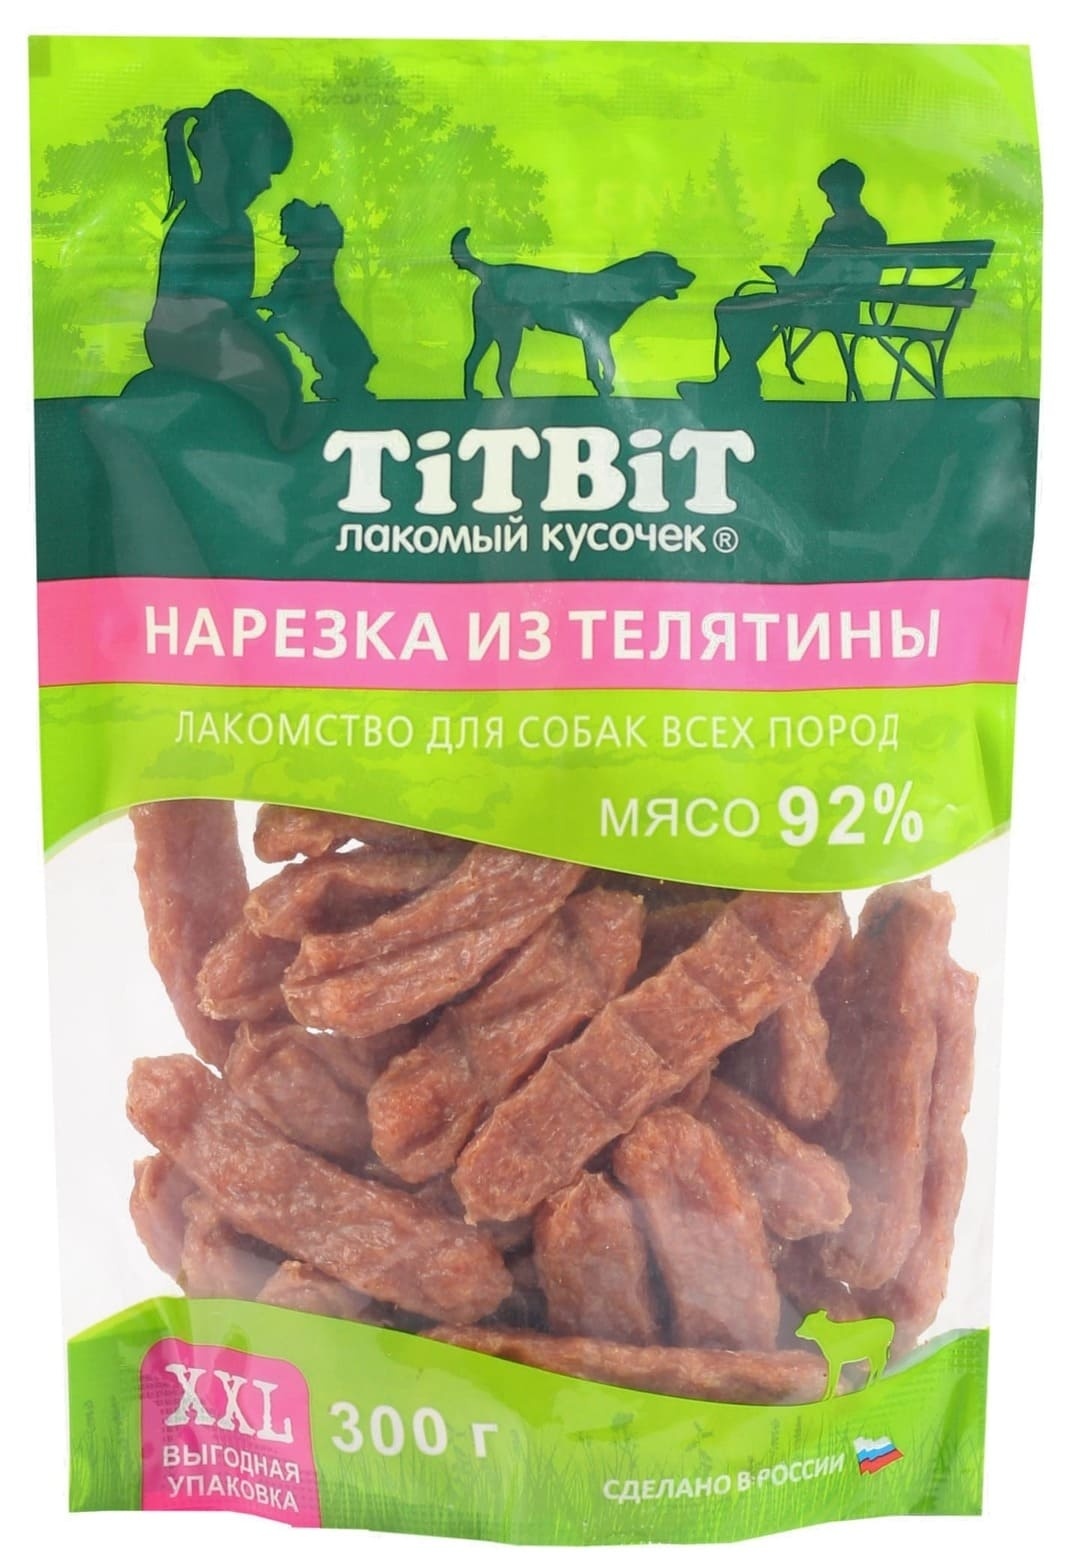 TiTBiT TiTBiT нарезка из телятины для собак всех пород, выгодная упаковка XXL (300 г) лакомство для собак titbit нарезка из телятины 300г xxl выгодная упаковка